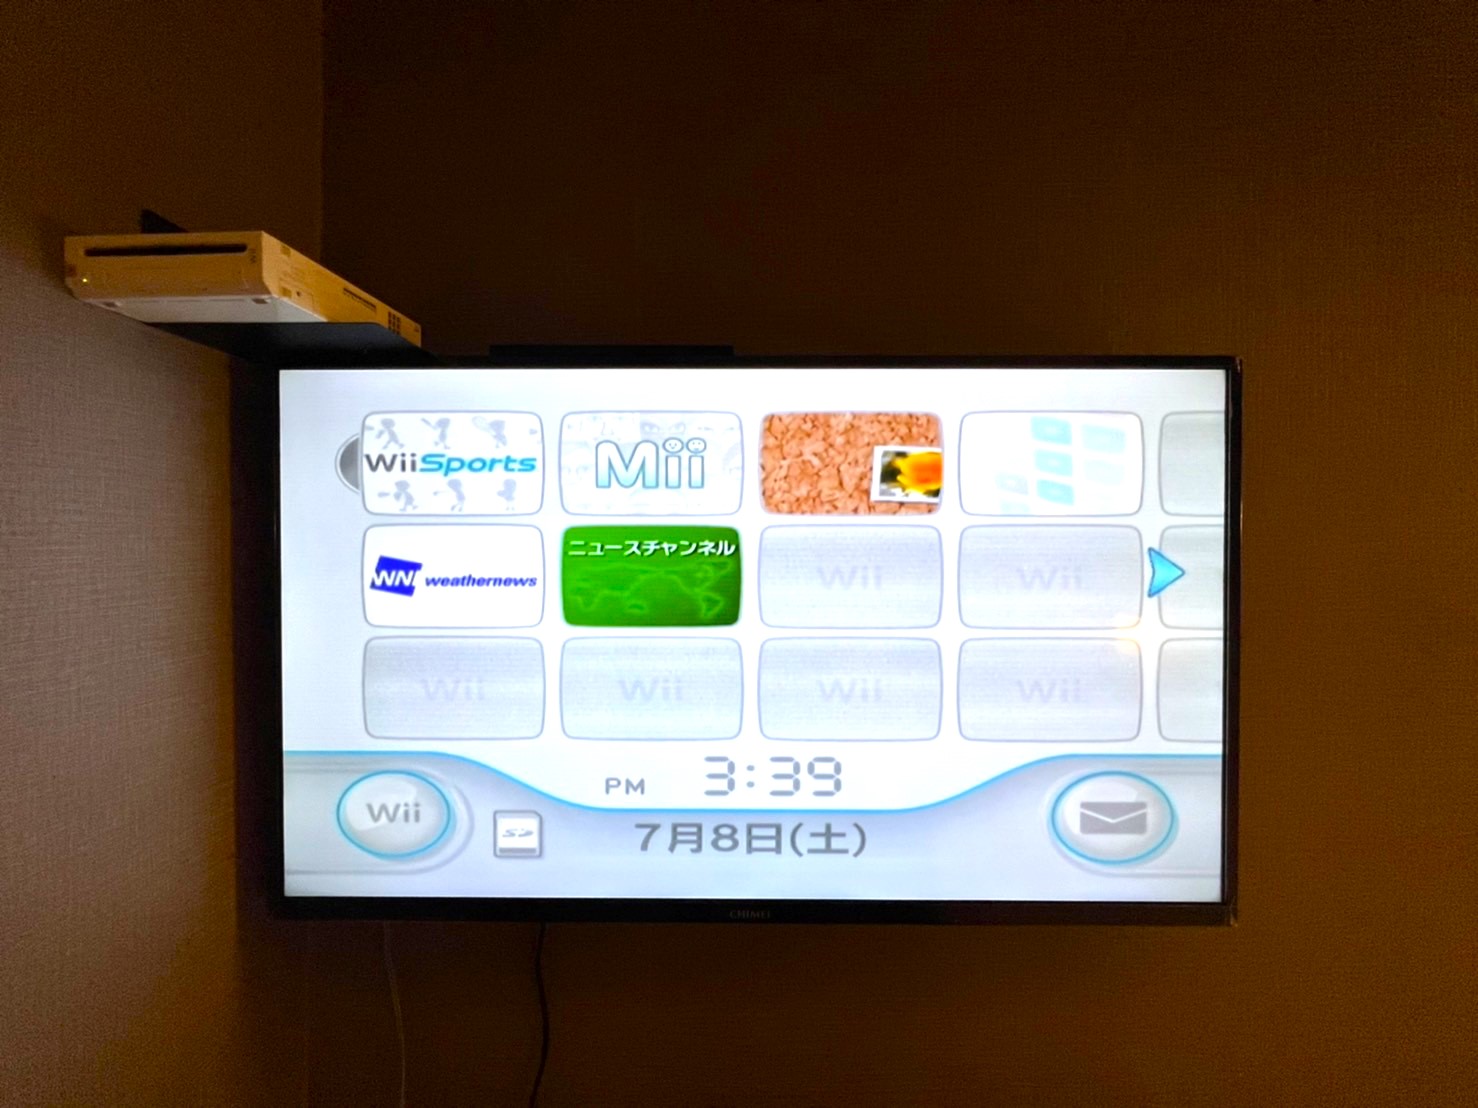 童歡樂Wii遊戲房 / Children's Wii games room